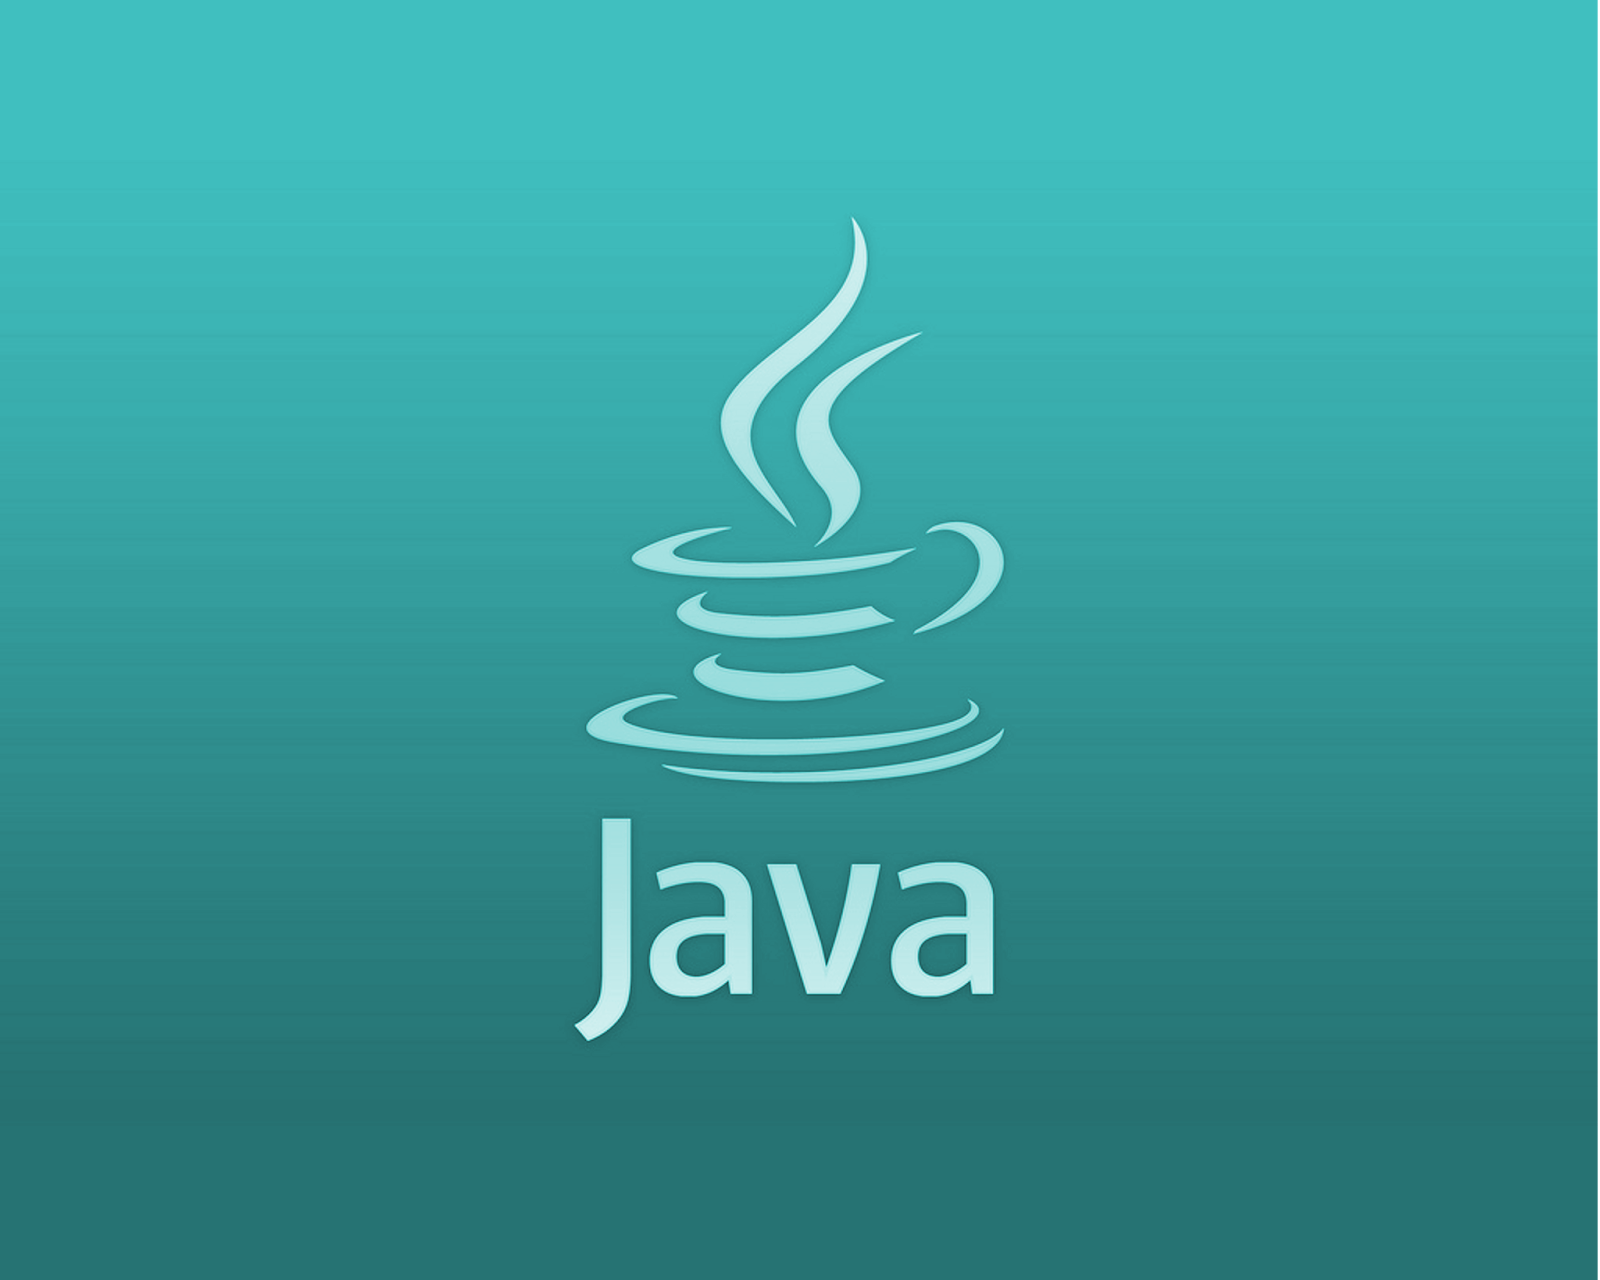 Язык программирования java. Java язык программирования логотип. Жавалоготип язык программирования. Иконка java. Java page